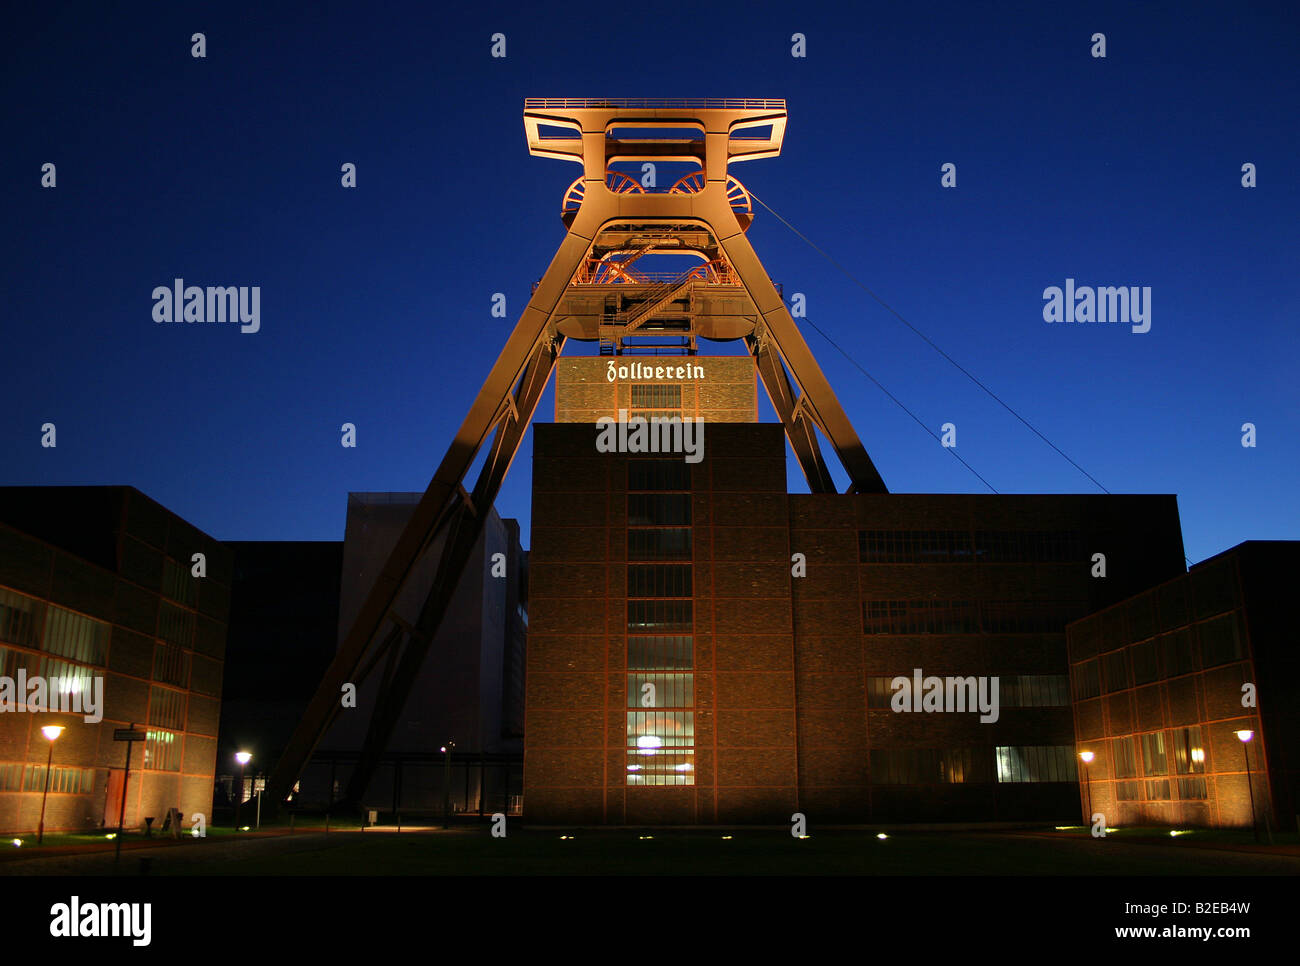 Monument industriel lit up at Dusk, complexe industriel de la mine de charbon de Zollverein, Essen, Rhénanie du Nord-Westphalie, Allemagne Banque D'Images